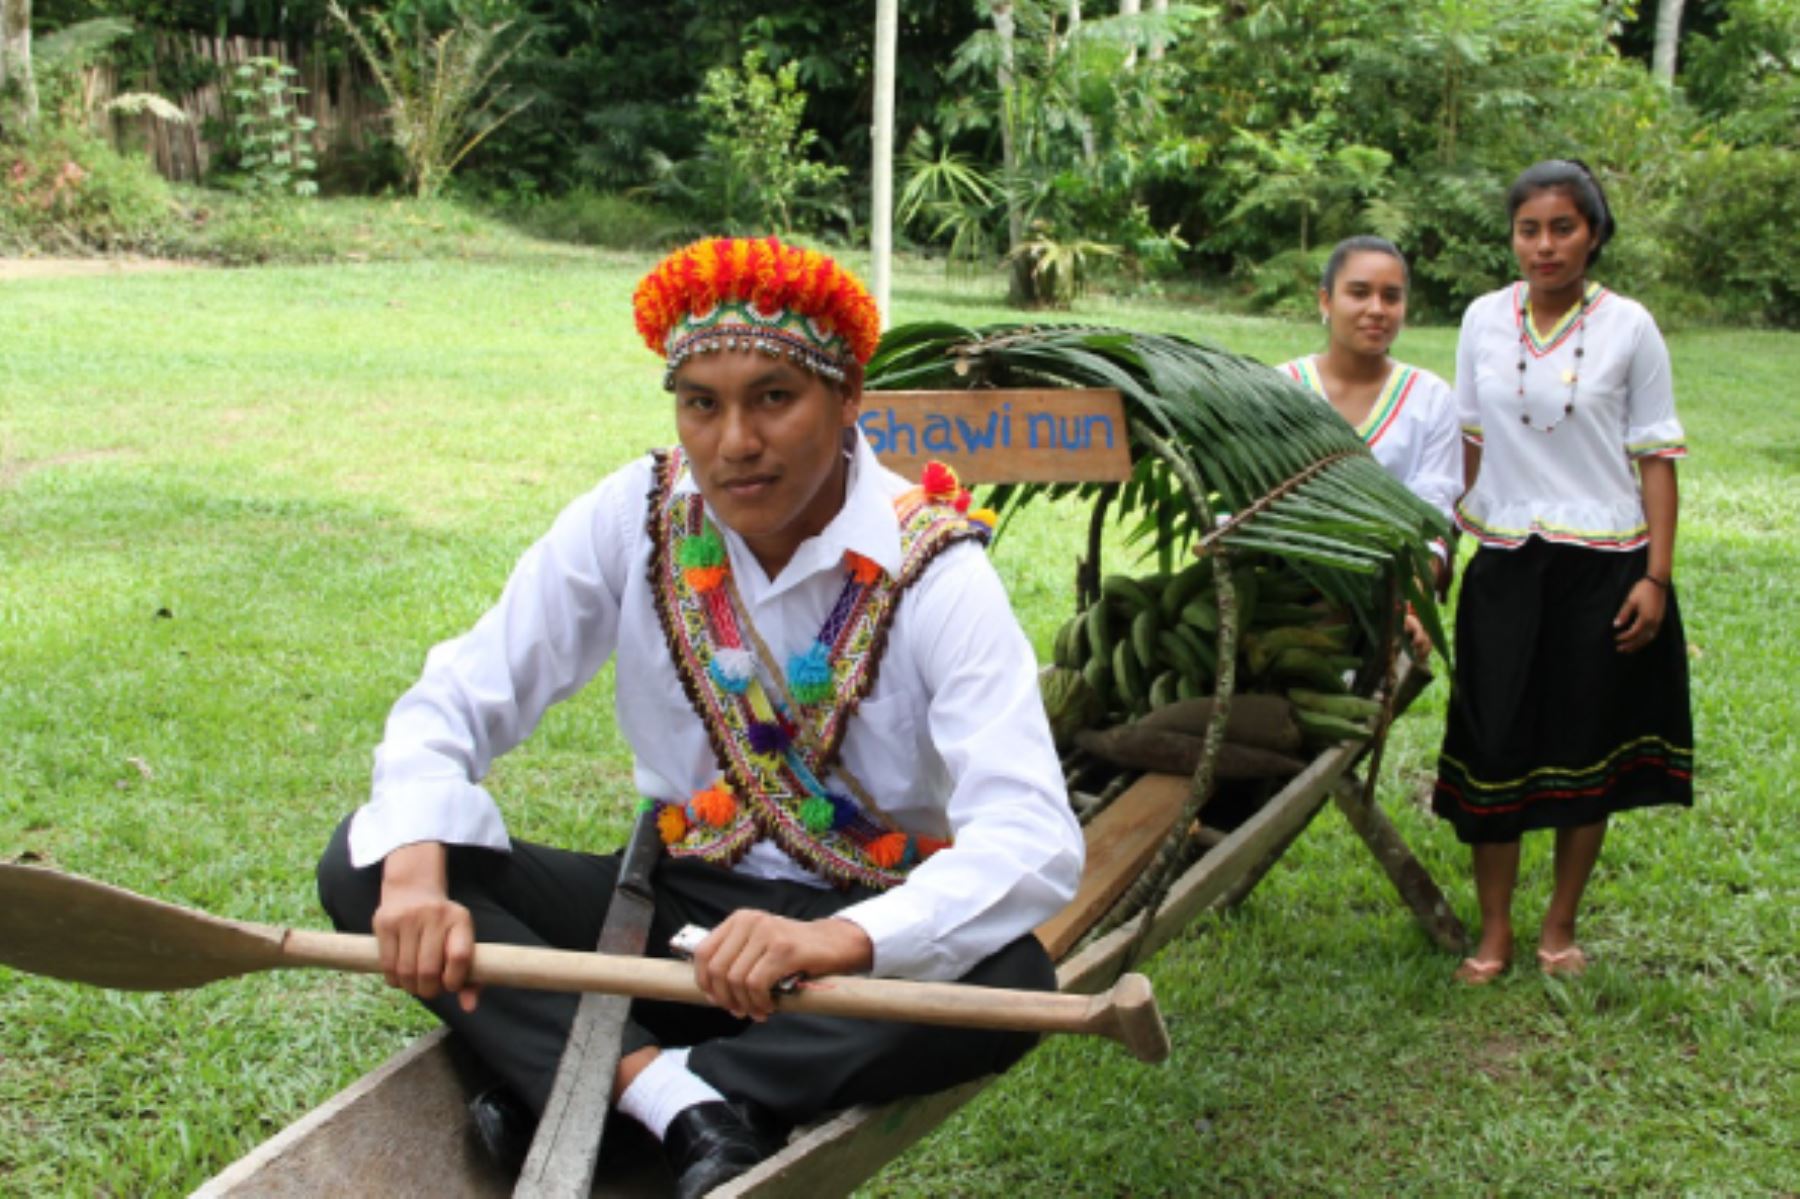 La Beca Comunidades Nativas Amazónicas brinda la oportunidad de seguir estudios técnicos productivos en áreas en las que luego podrás trabajar o emprender, y así mejorar tu calidad de vida. Foto: ANDINA/Pronabec